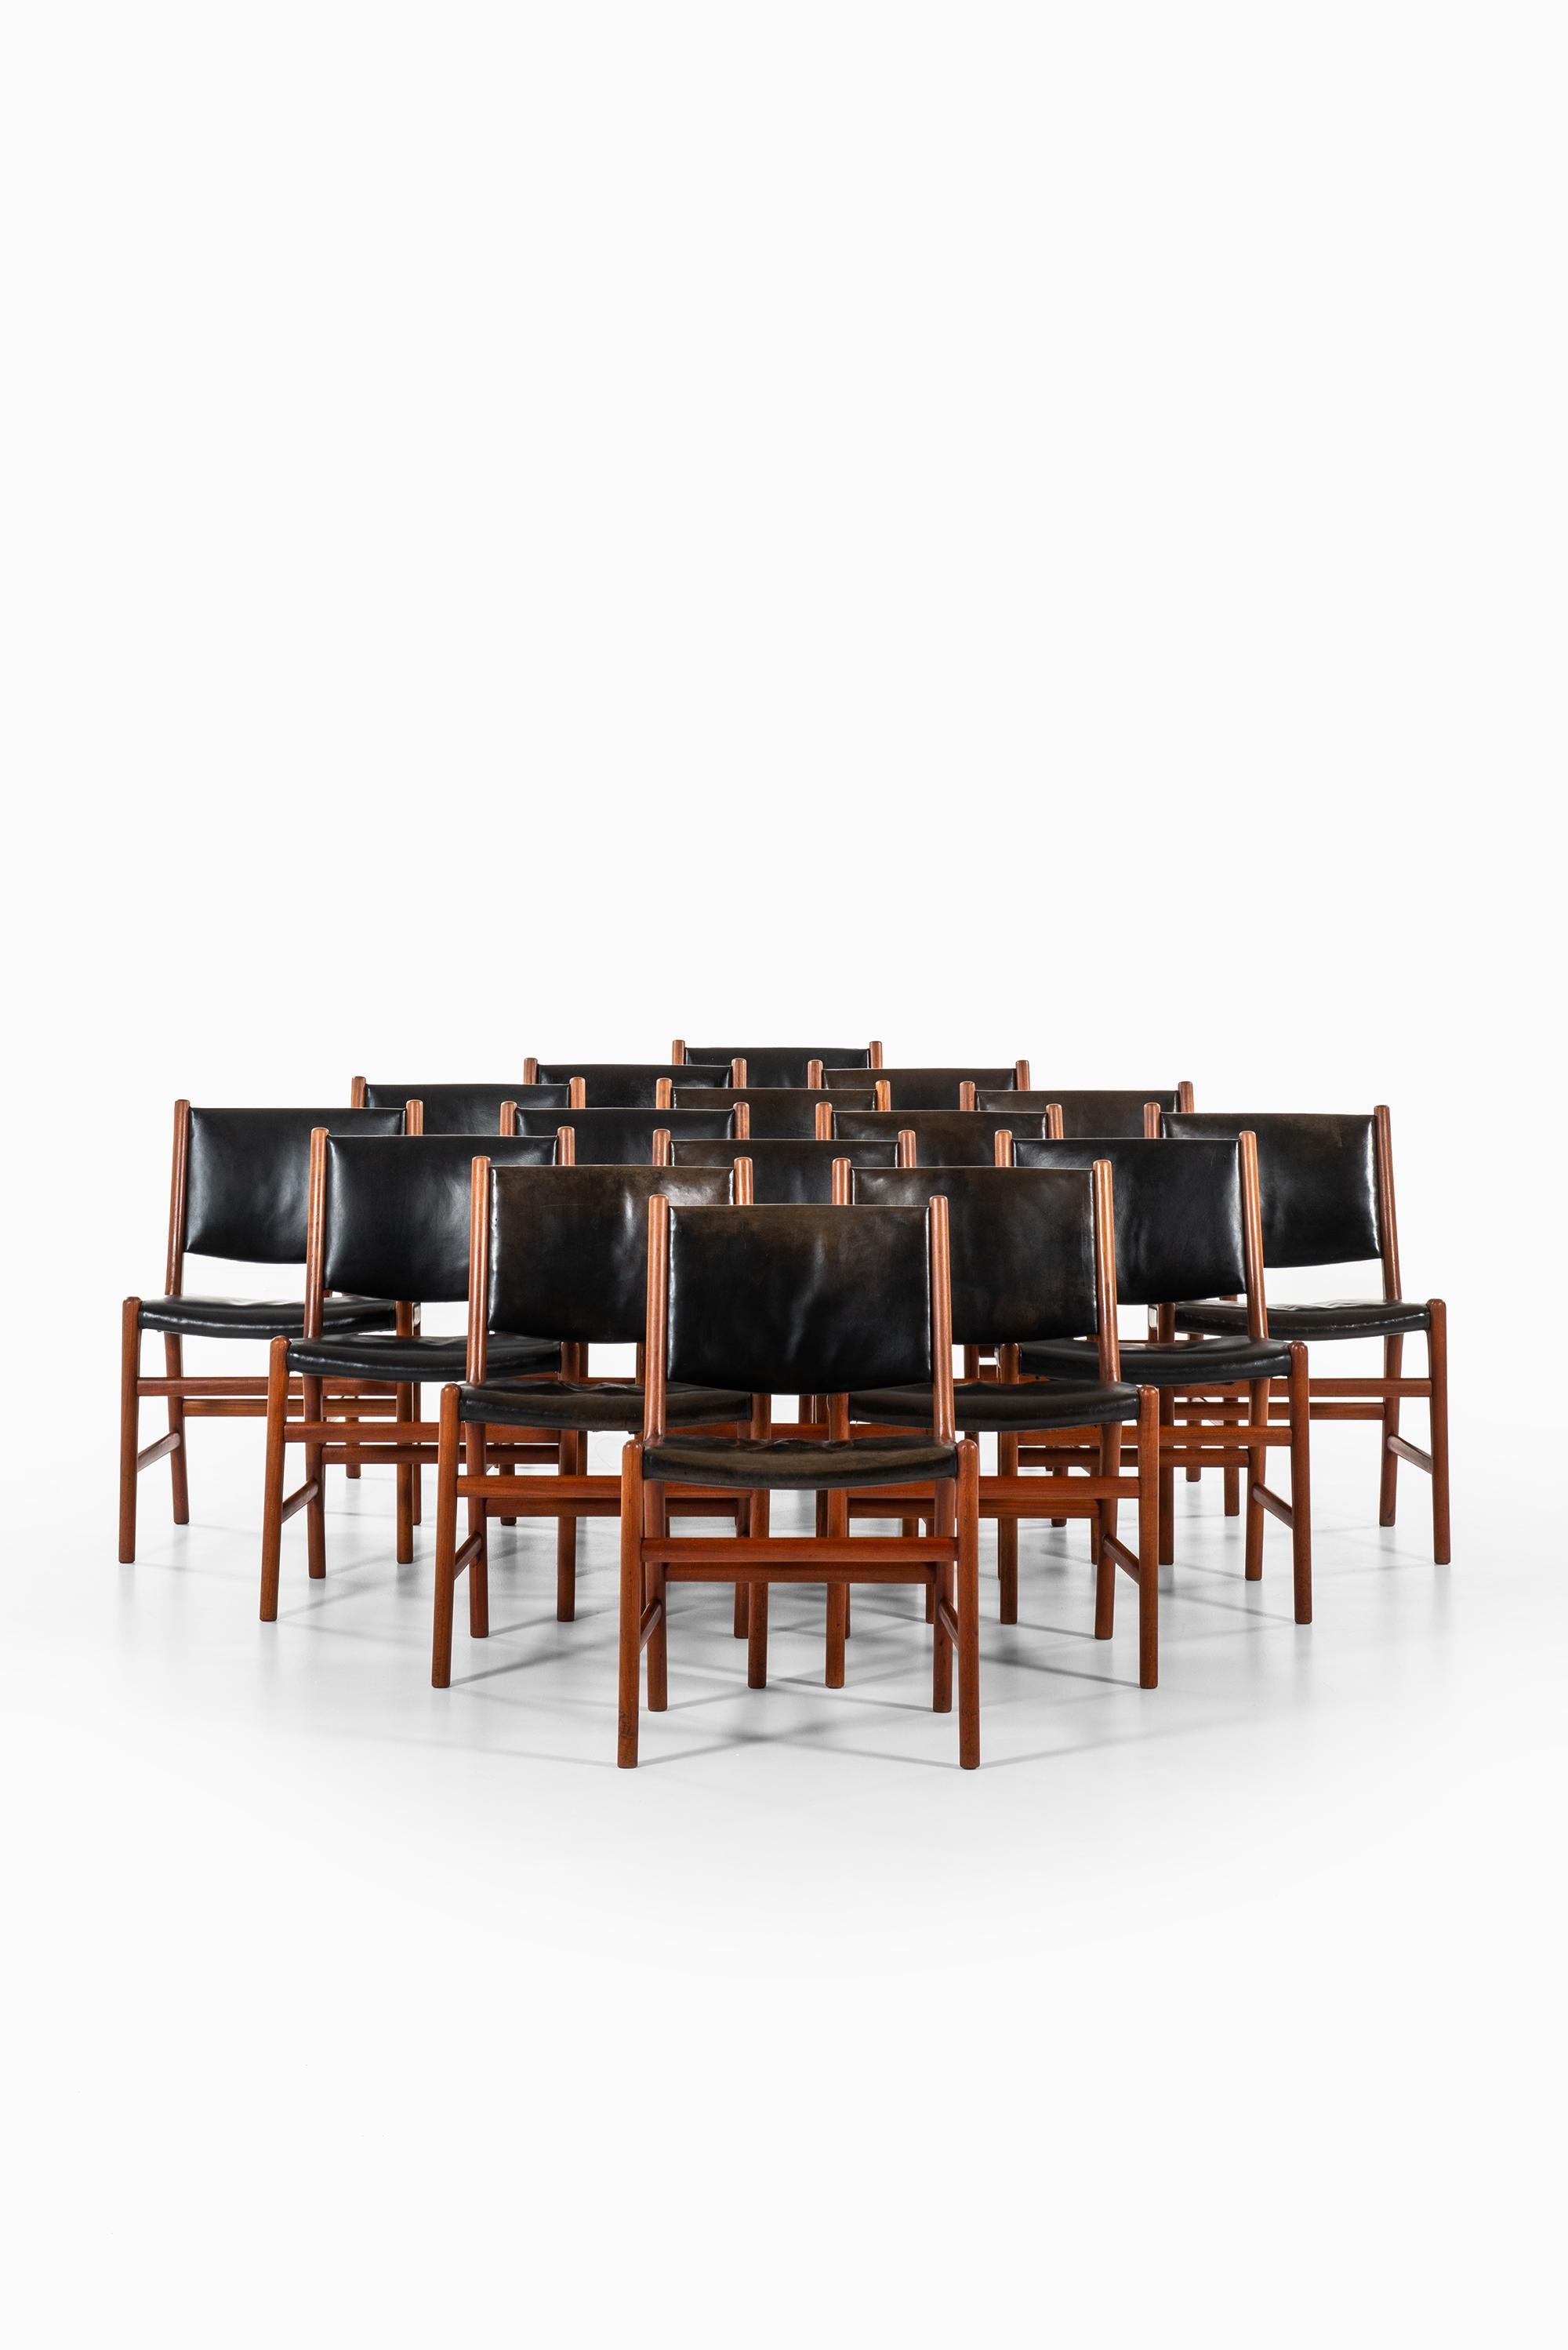 Danish Hans Wegner Dining Chairs Variant of Model JH507 by Cabinetmaker Johannes Hansen For Sale